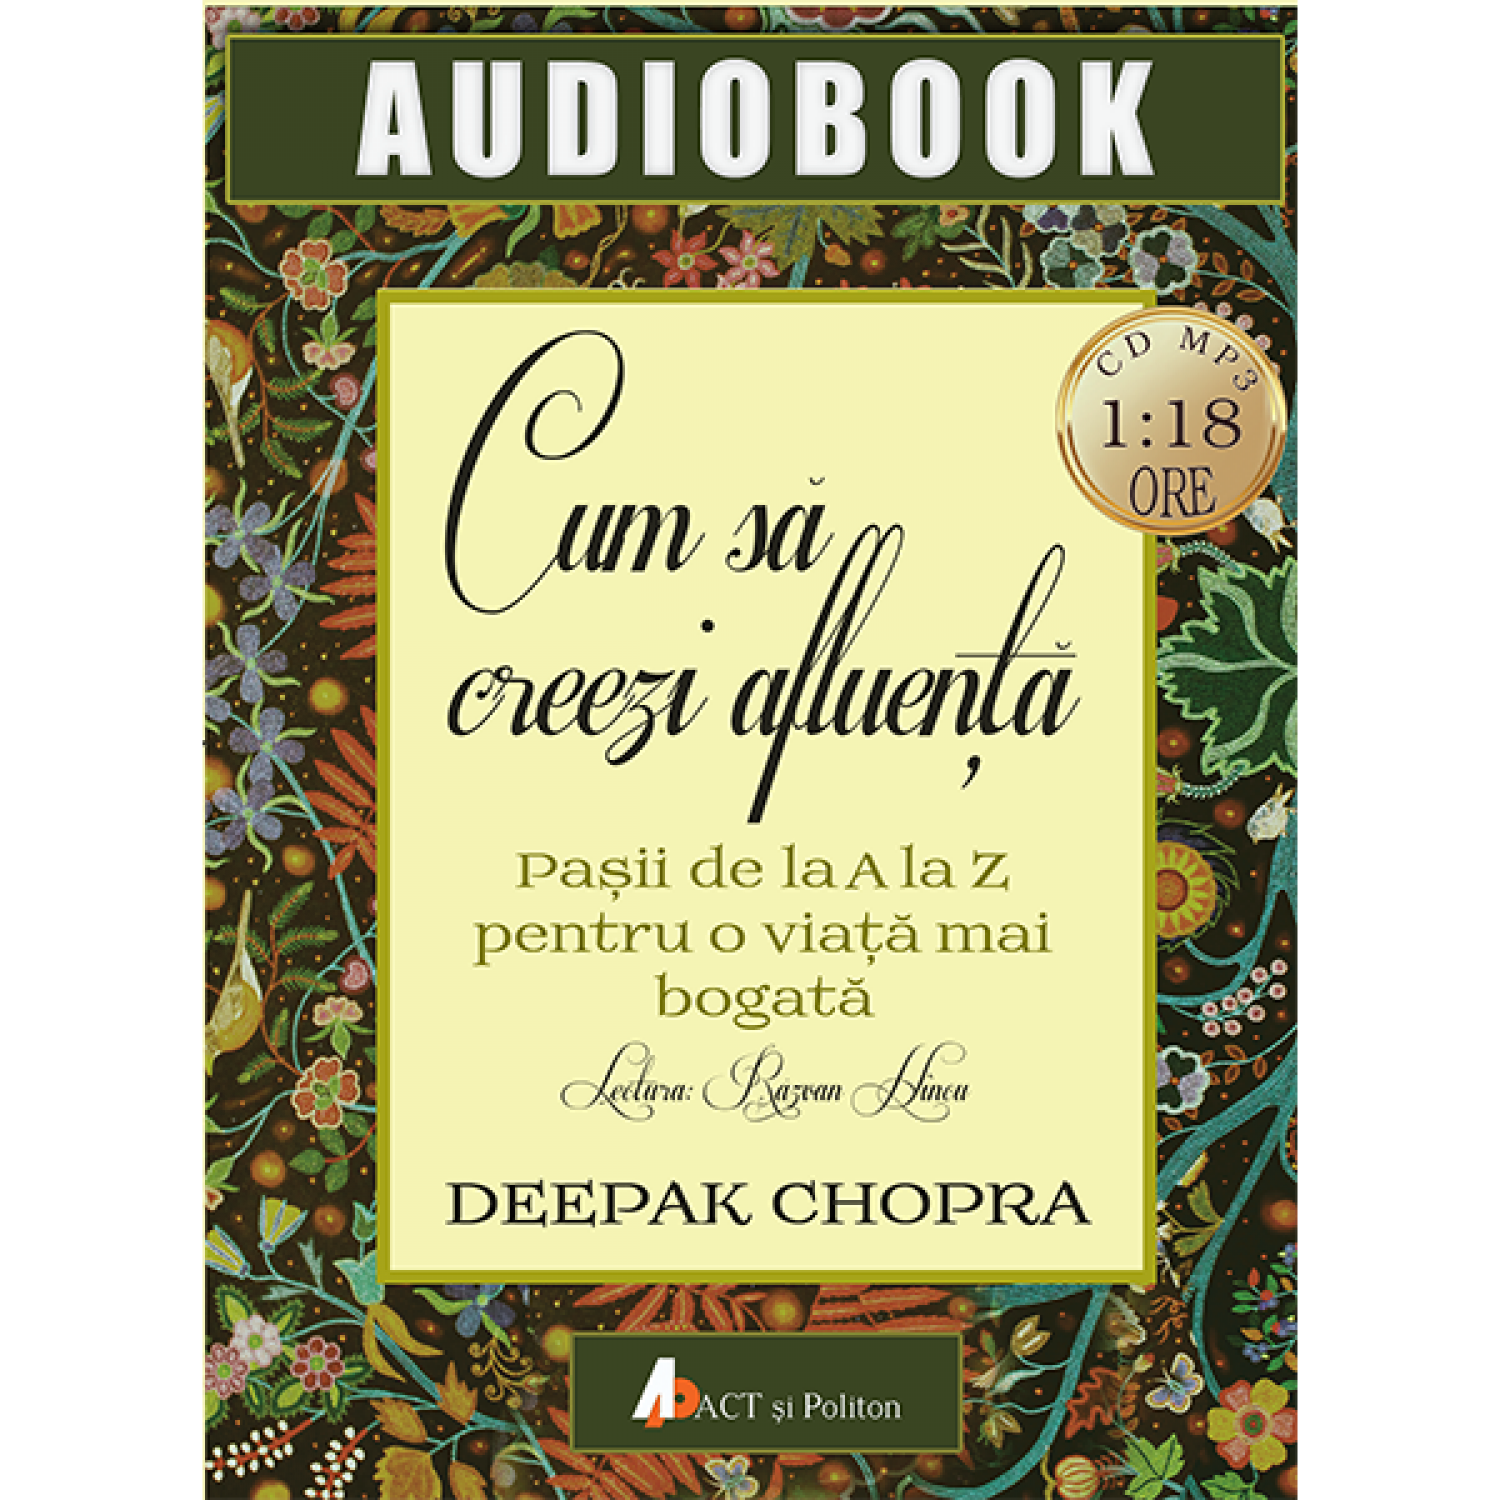 Cum sa creezi afluenta – Audiobook | Deepak Chopra carturesti 2022